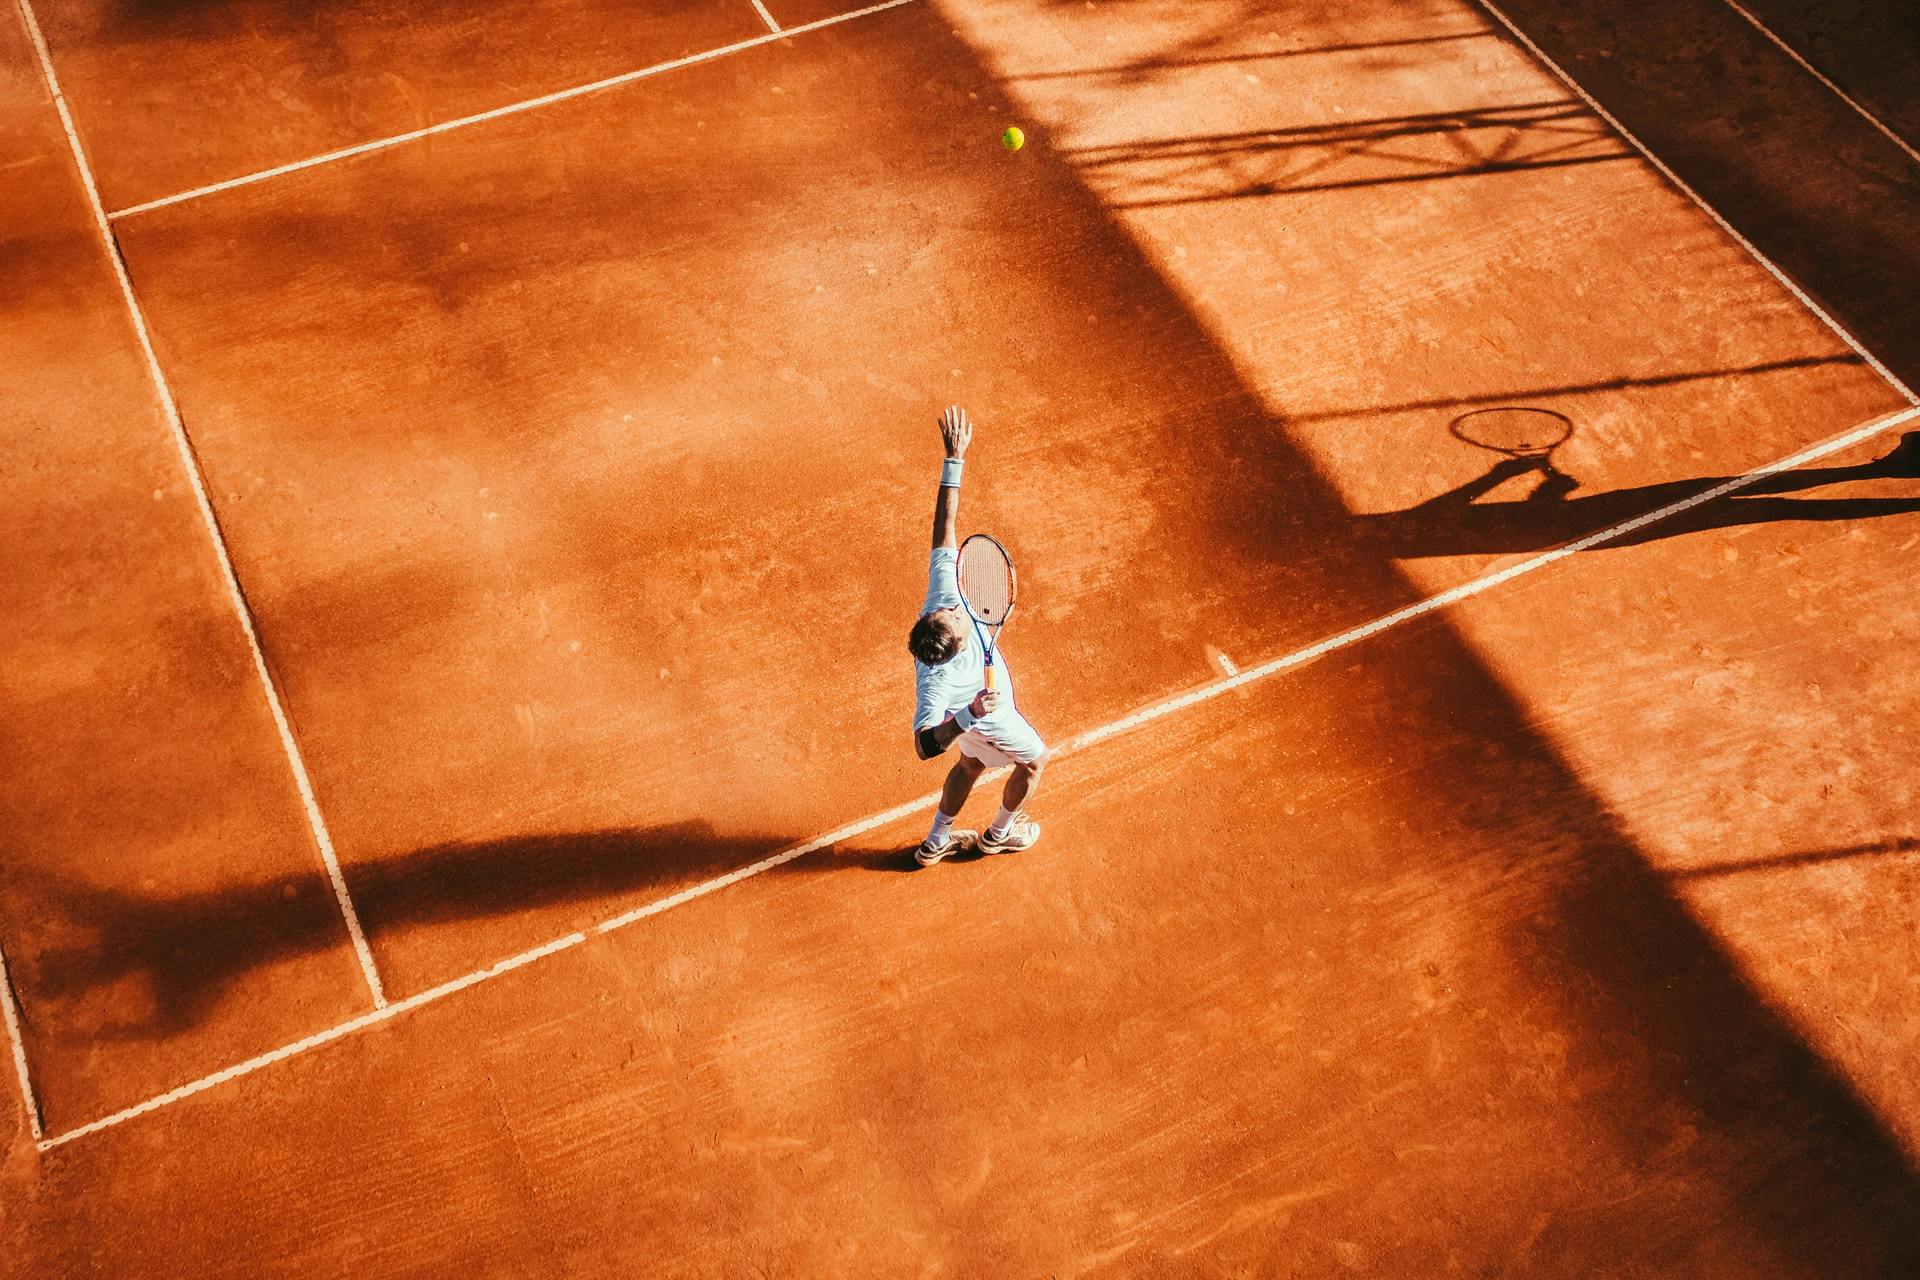 École de tennis Stageo